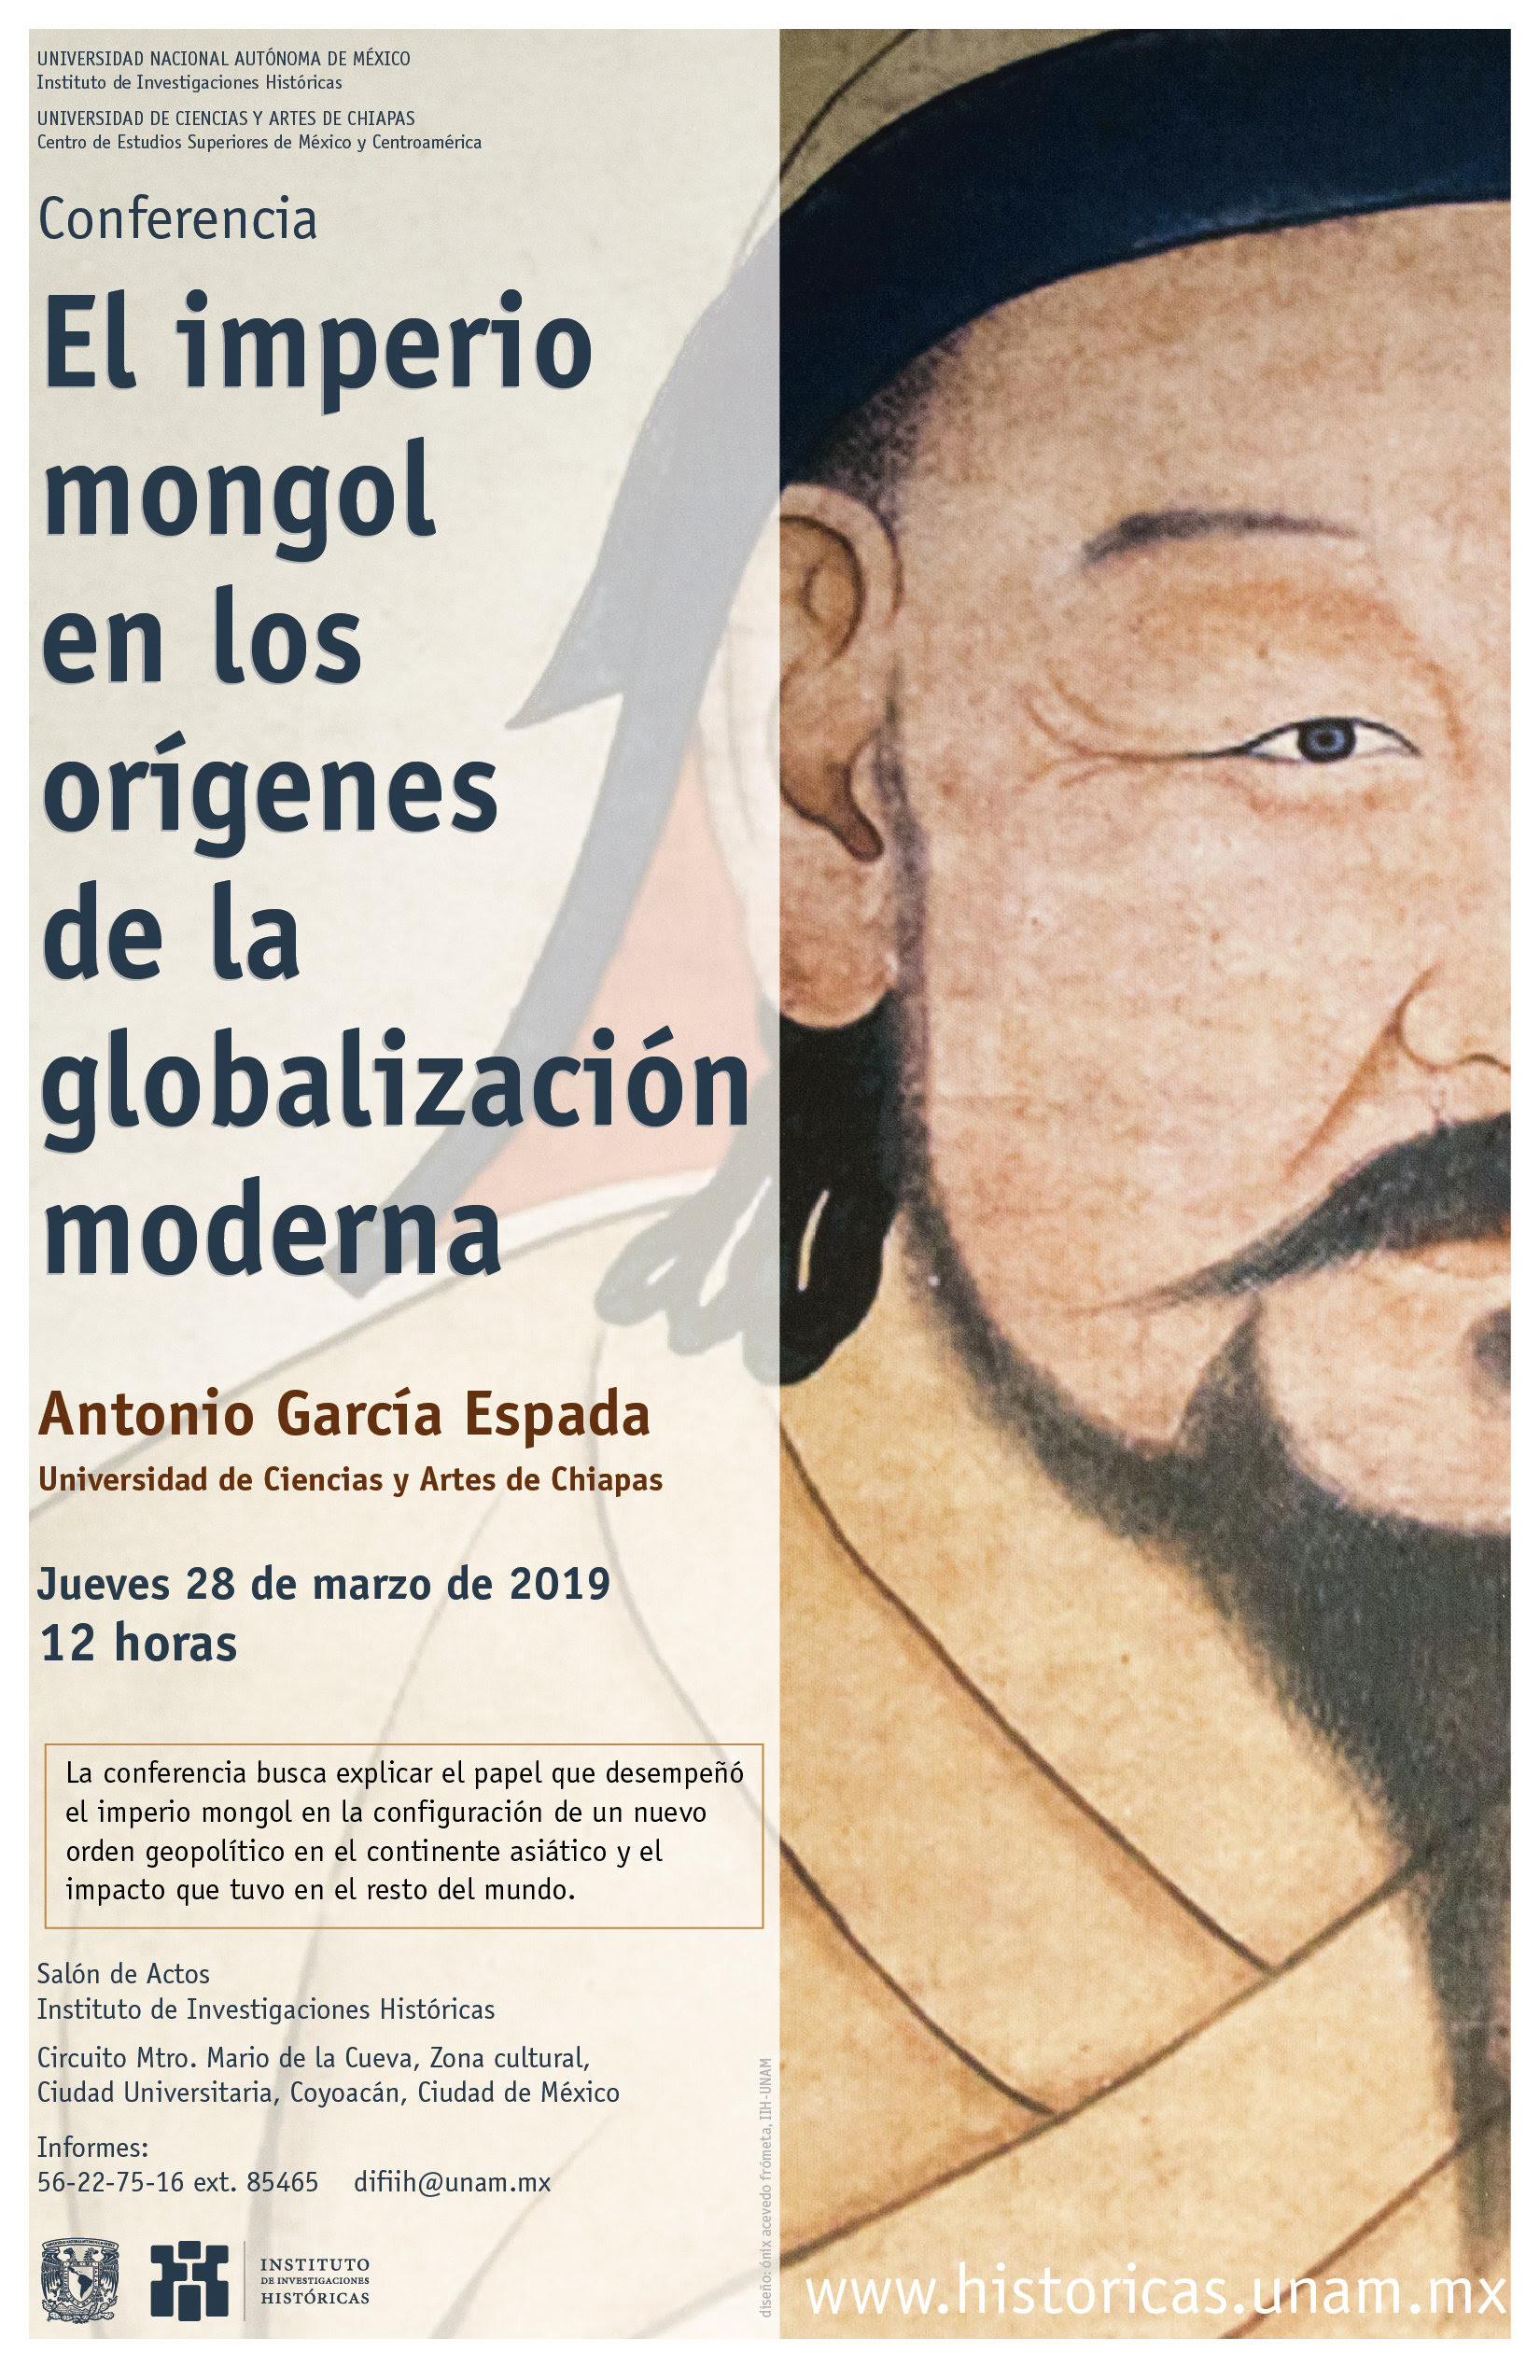 El imperio mongol en los orígenes de la globalización moderna